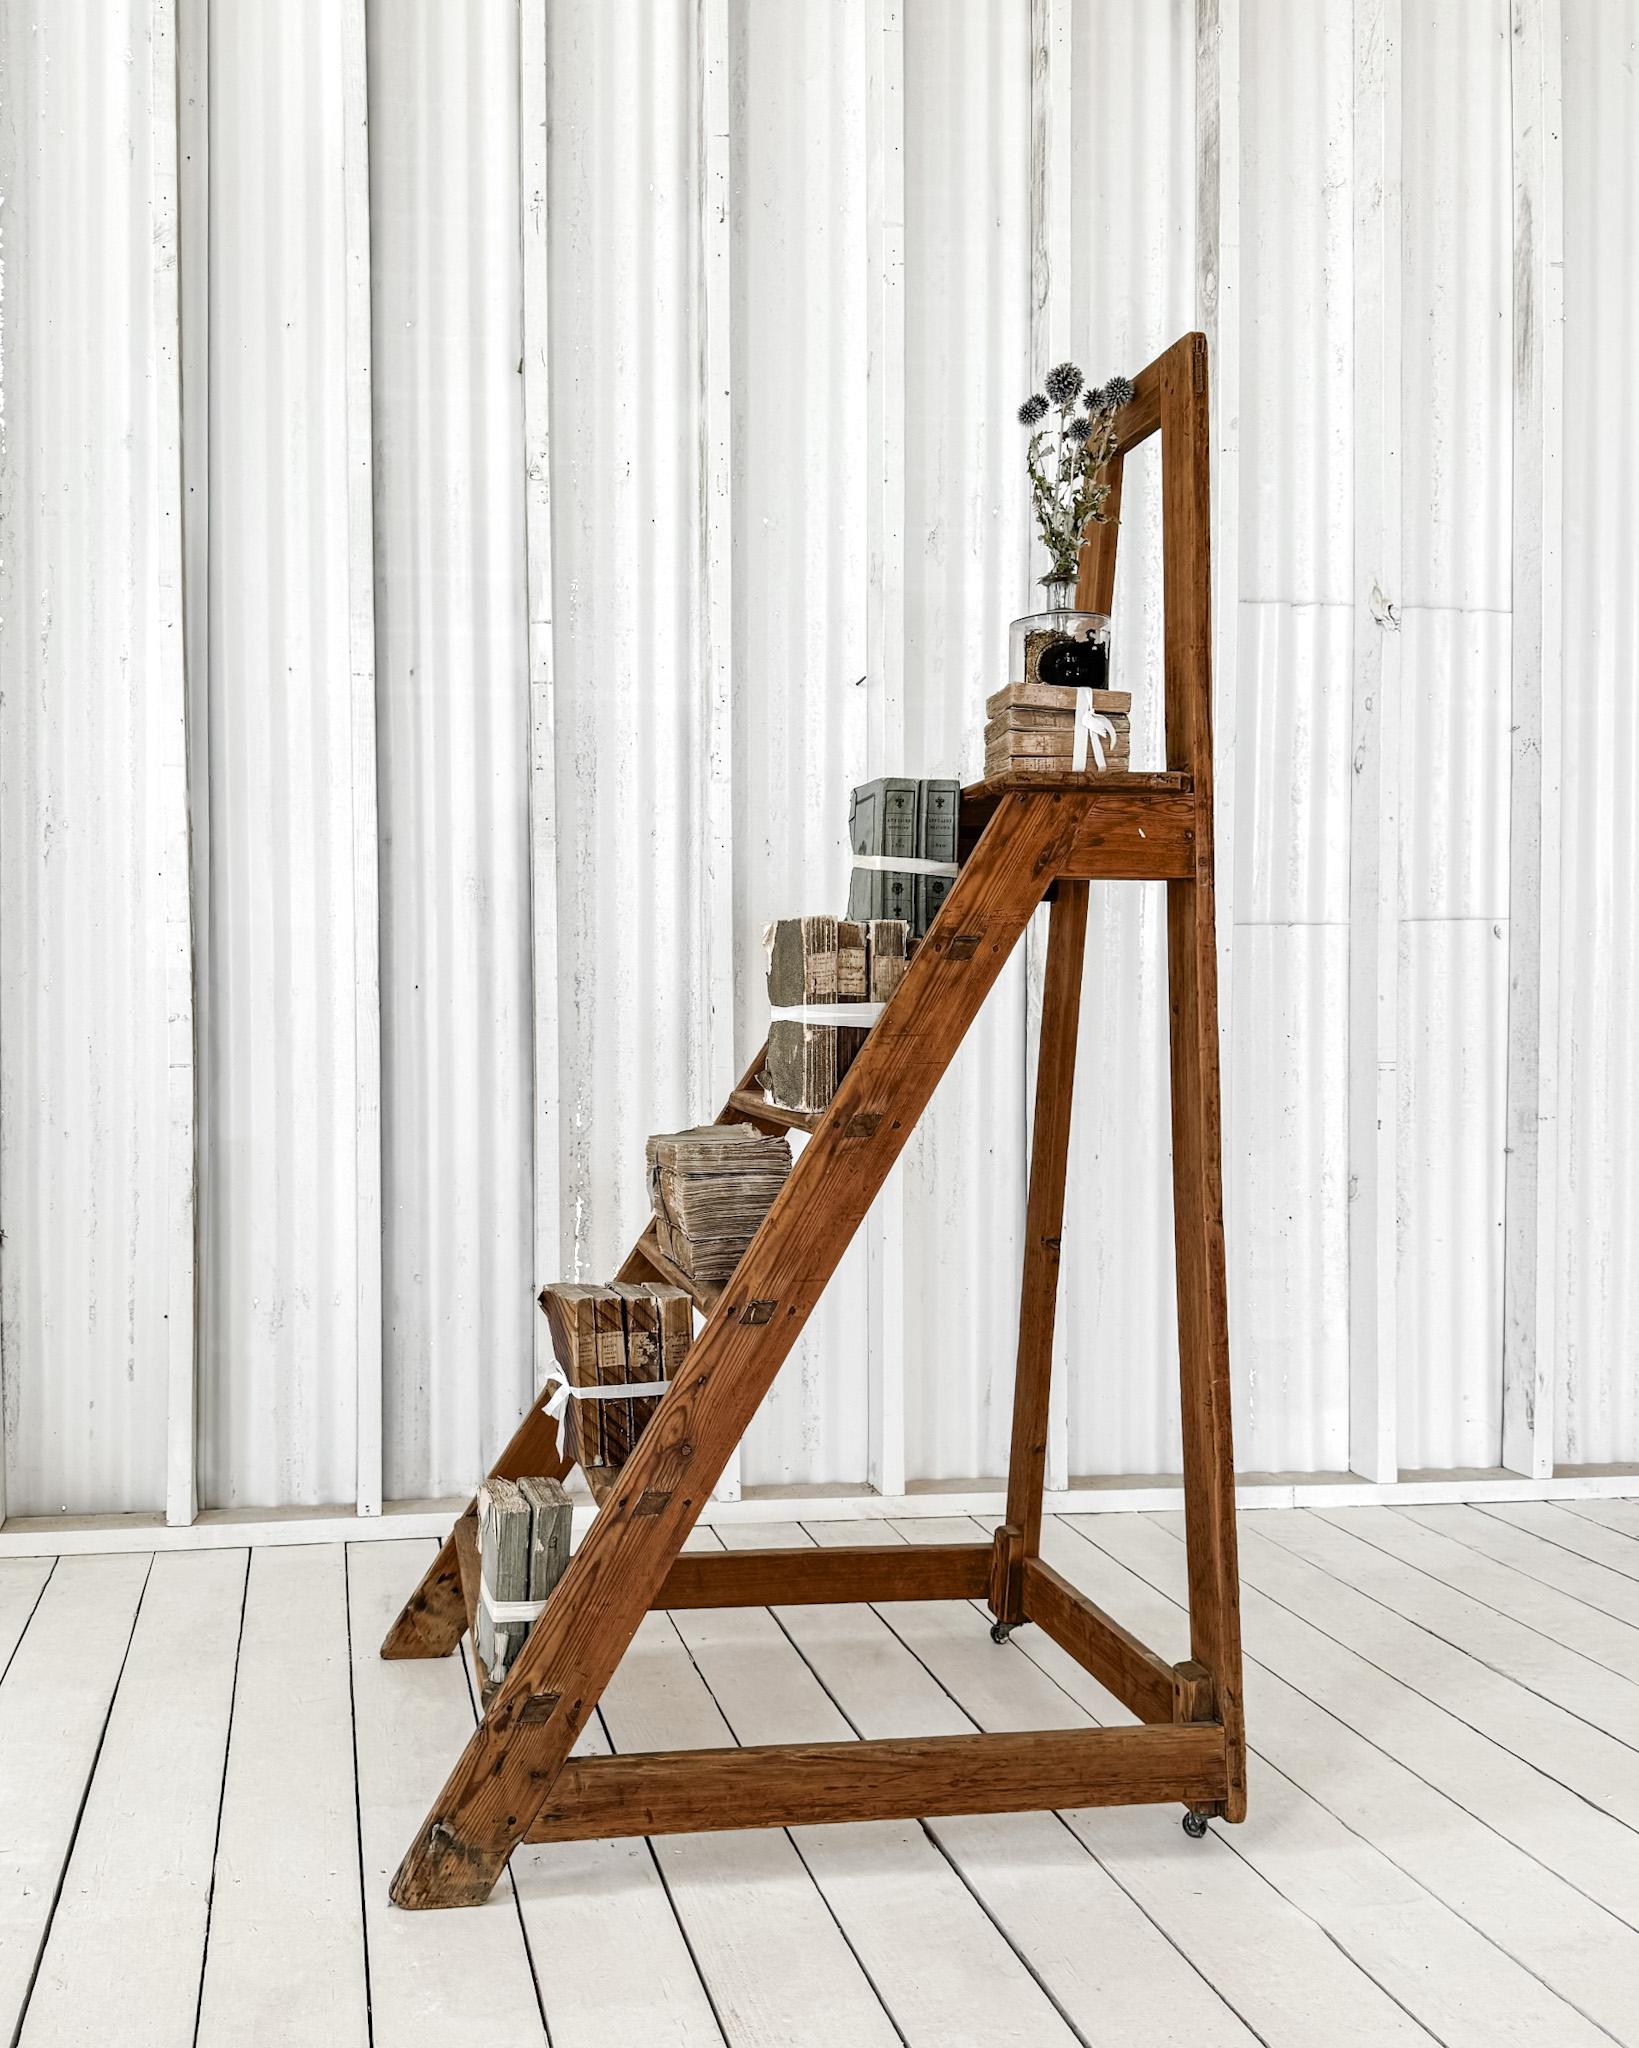 Ein hübscher Satz antiker französischer Bibliothekstreppen. Die aus Obstholz gefertigte Leiter hat ein einfaches Design und besteht aus 5 Stufen mit einer tieferen oberen Plattform. Zwei kleine Rollen an der Rückseite verbessern die Beweglichkeit